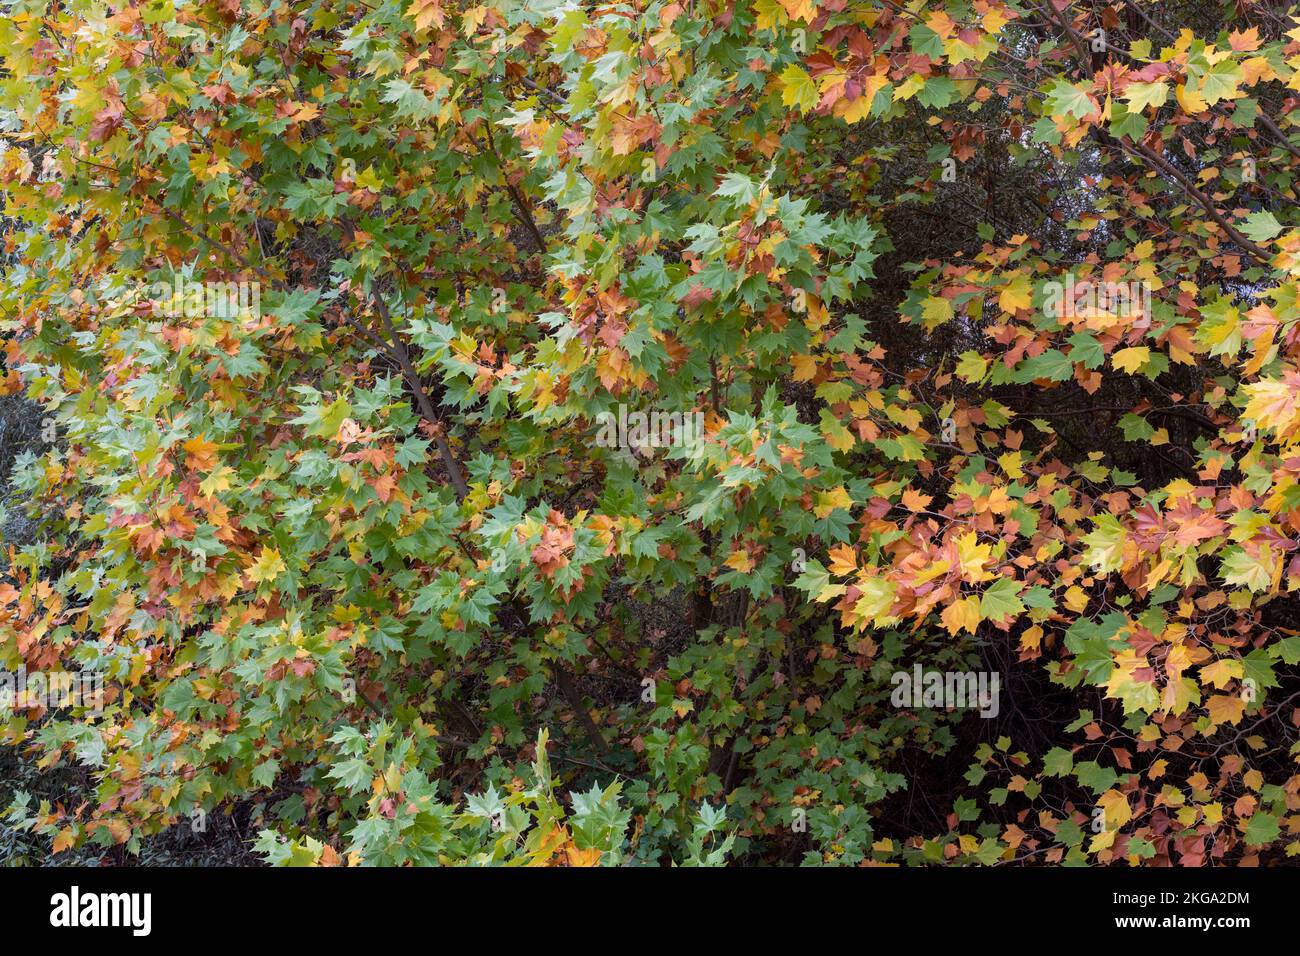 Hojas de diferentes colores de un bosque en otoño Stock Photo